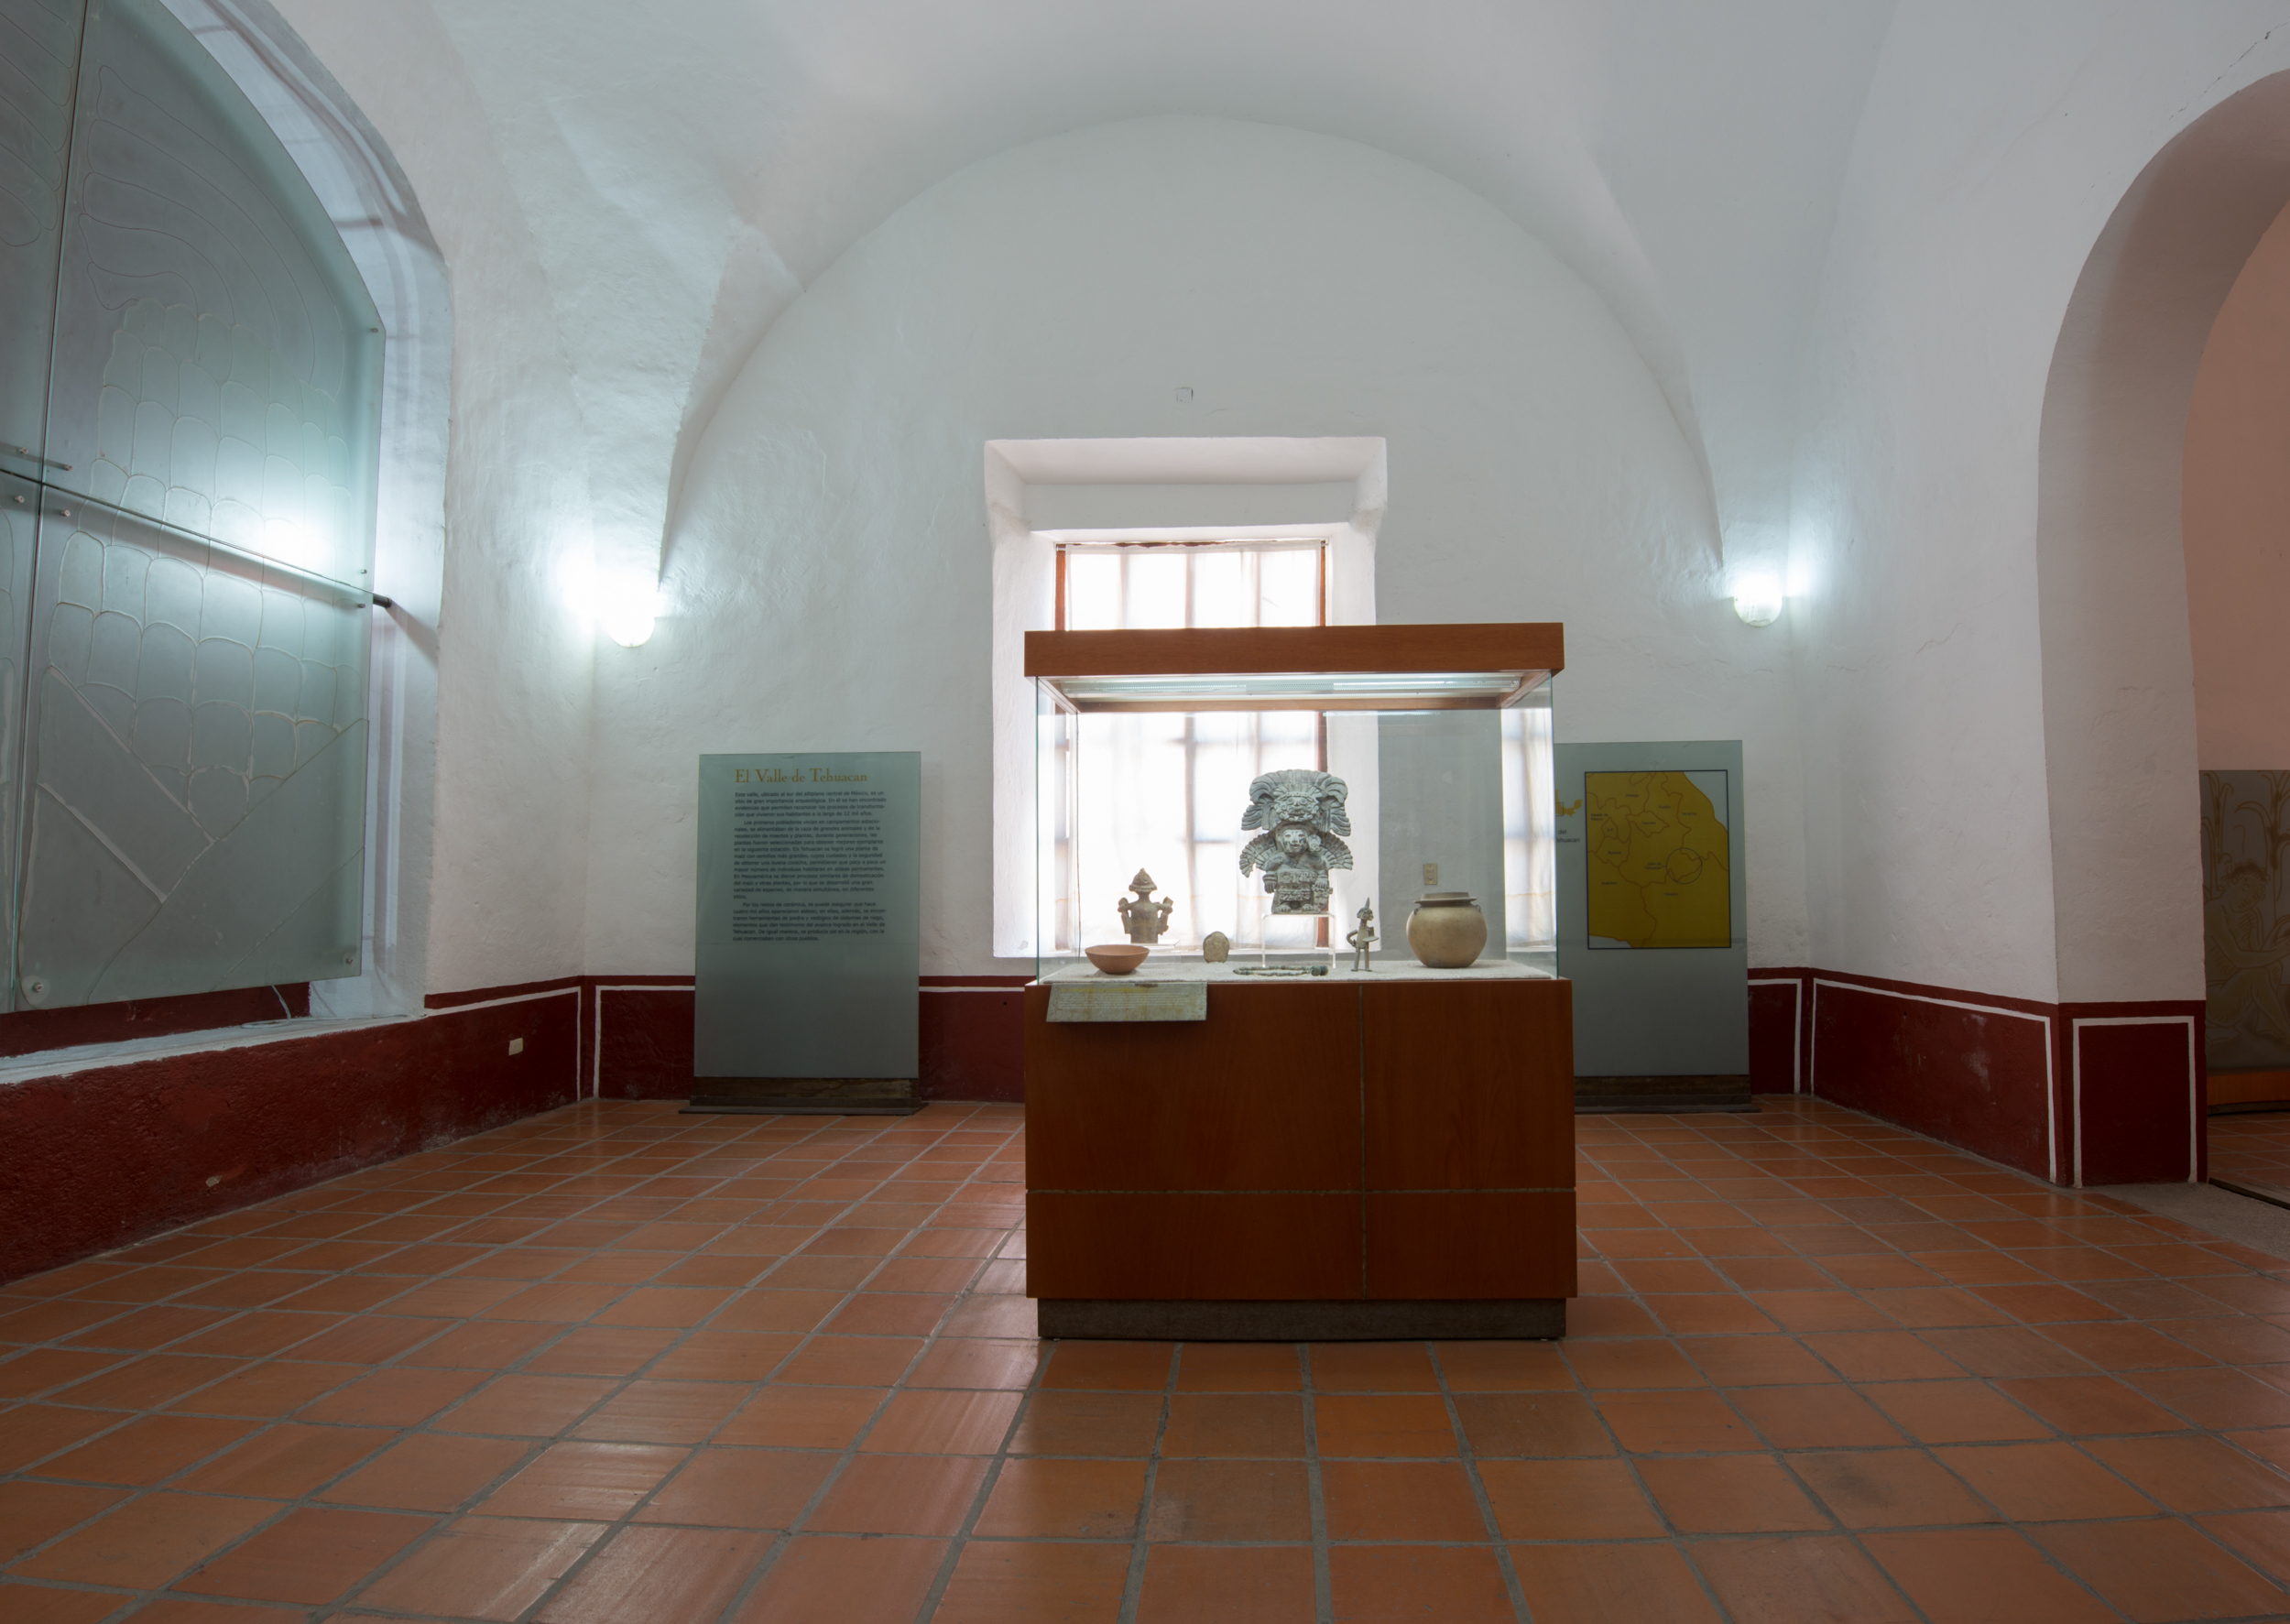 Sala introductoria de arqueología del Museo del Valle de Tehuacán